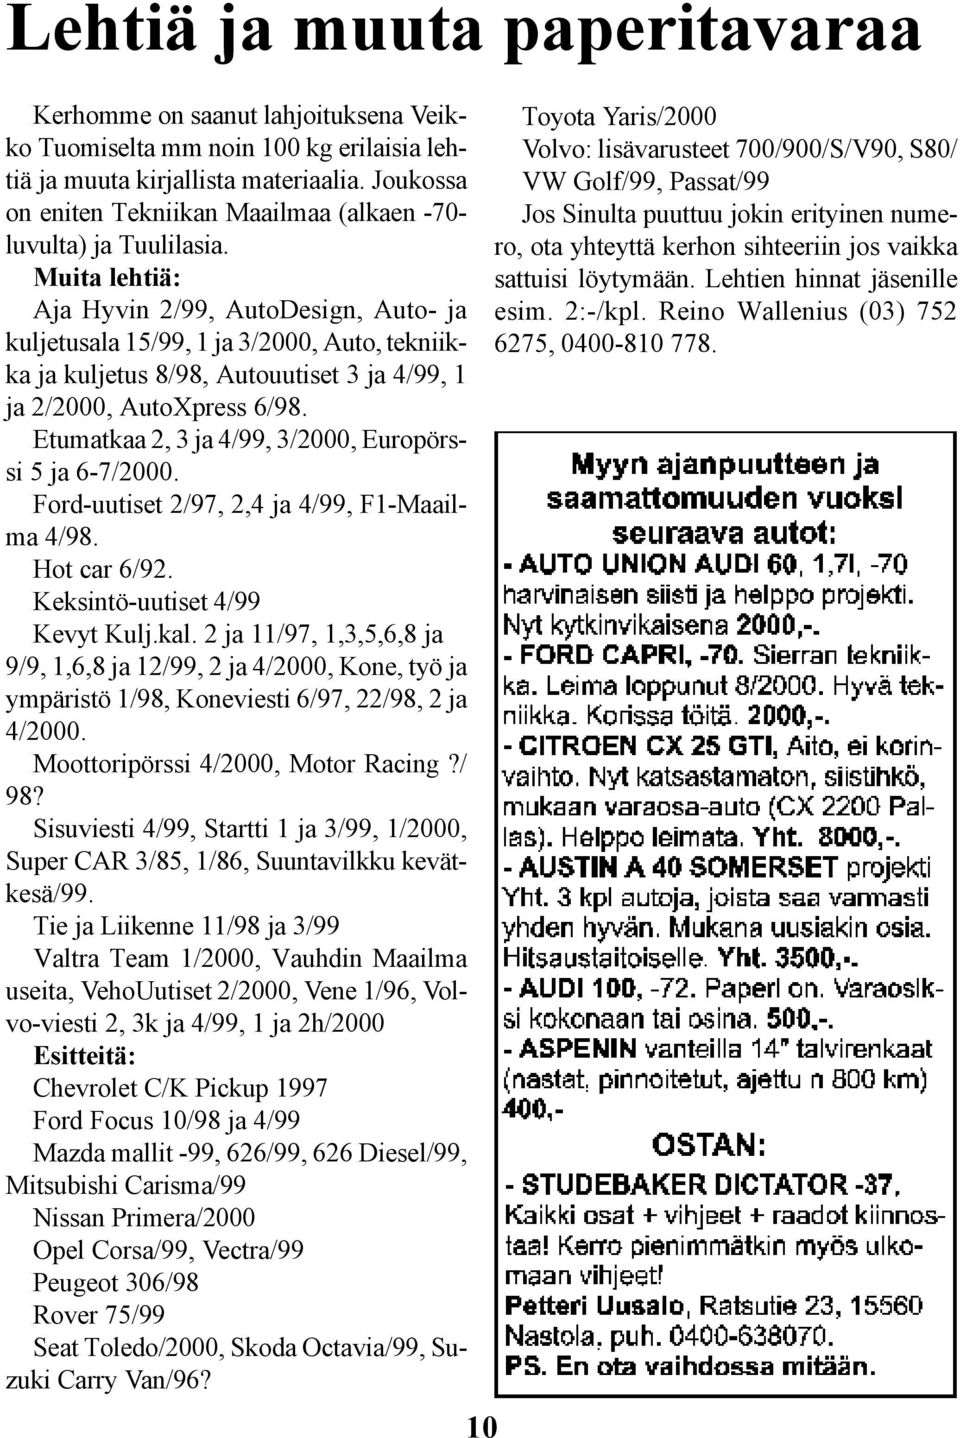 Muita lehtiä: Aja Hyvin 2/99, AutoDesign, Auto- ja kuljetusala 15/99, 1 ja 3/2000, Auto, tekniikka ja kuljetus 8/98, Autouutiset 3 ja 4/99, 1 ja 2/2000, AutoXpress 6/98.